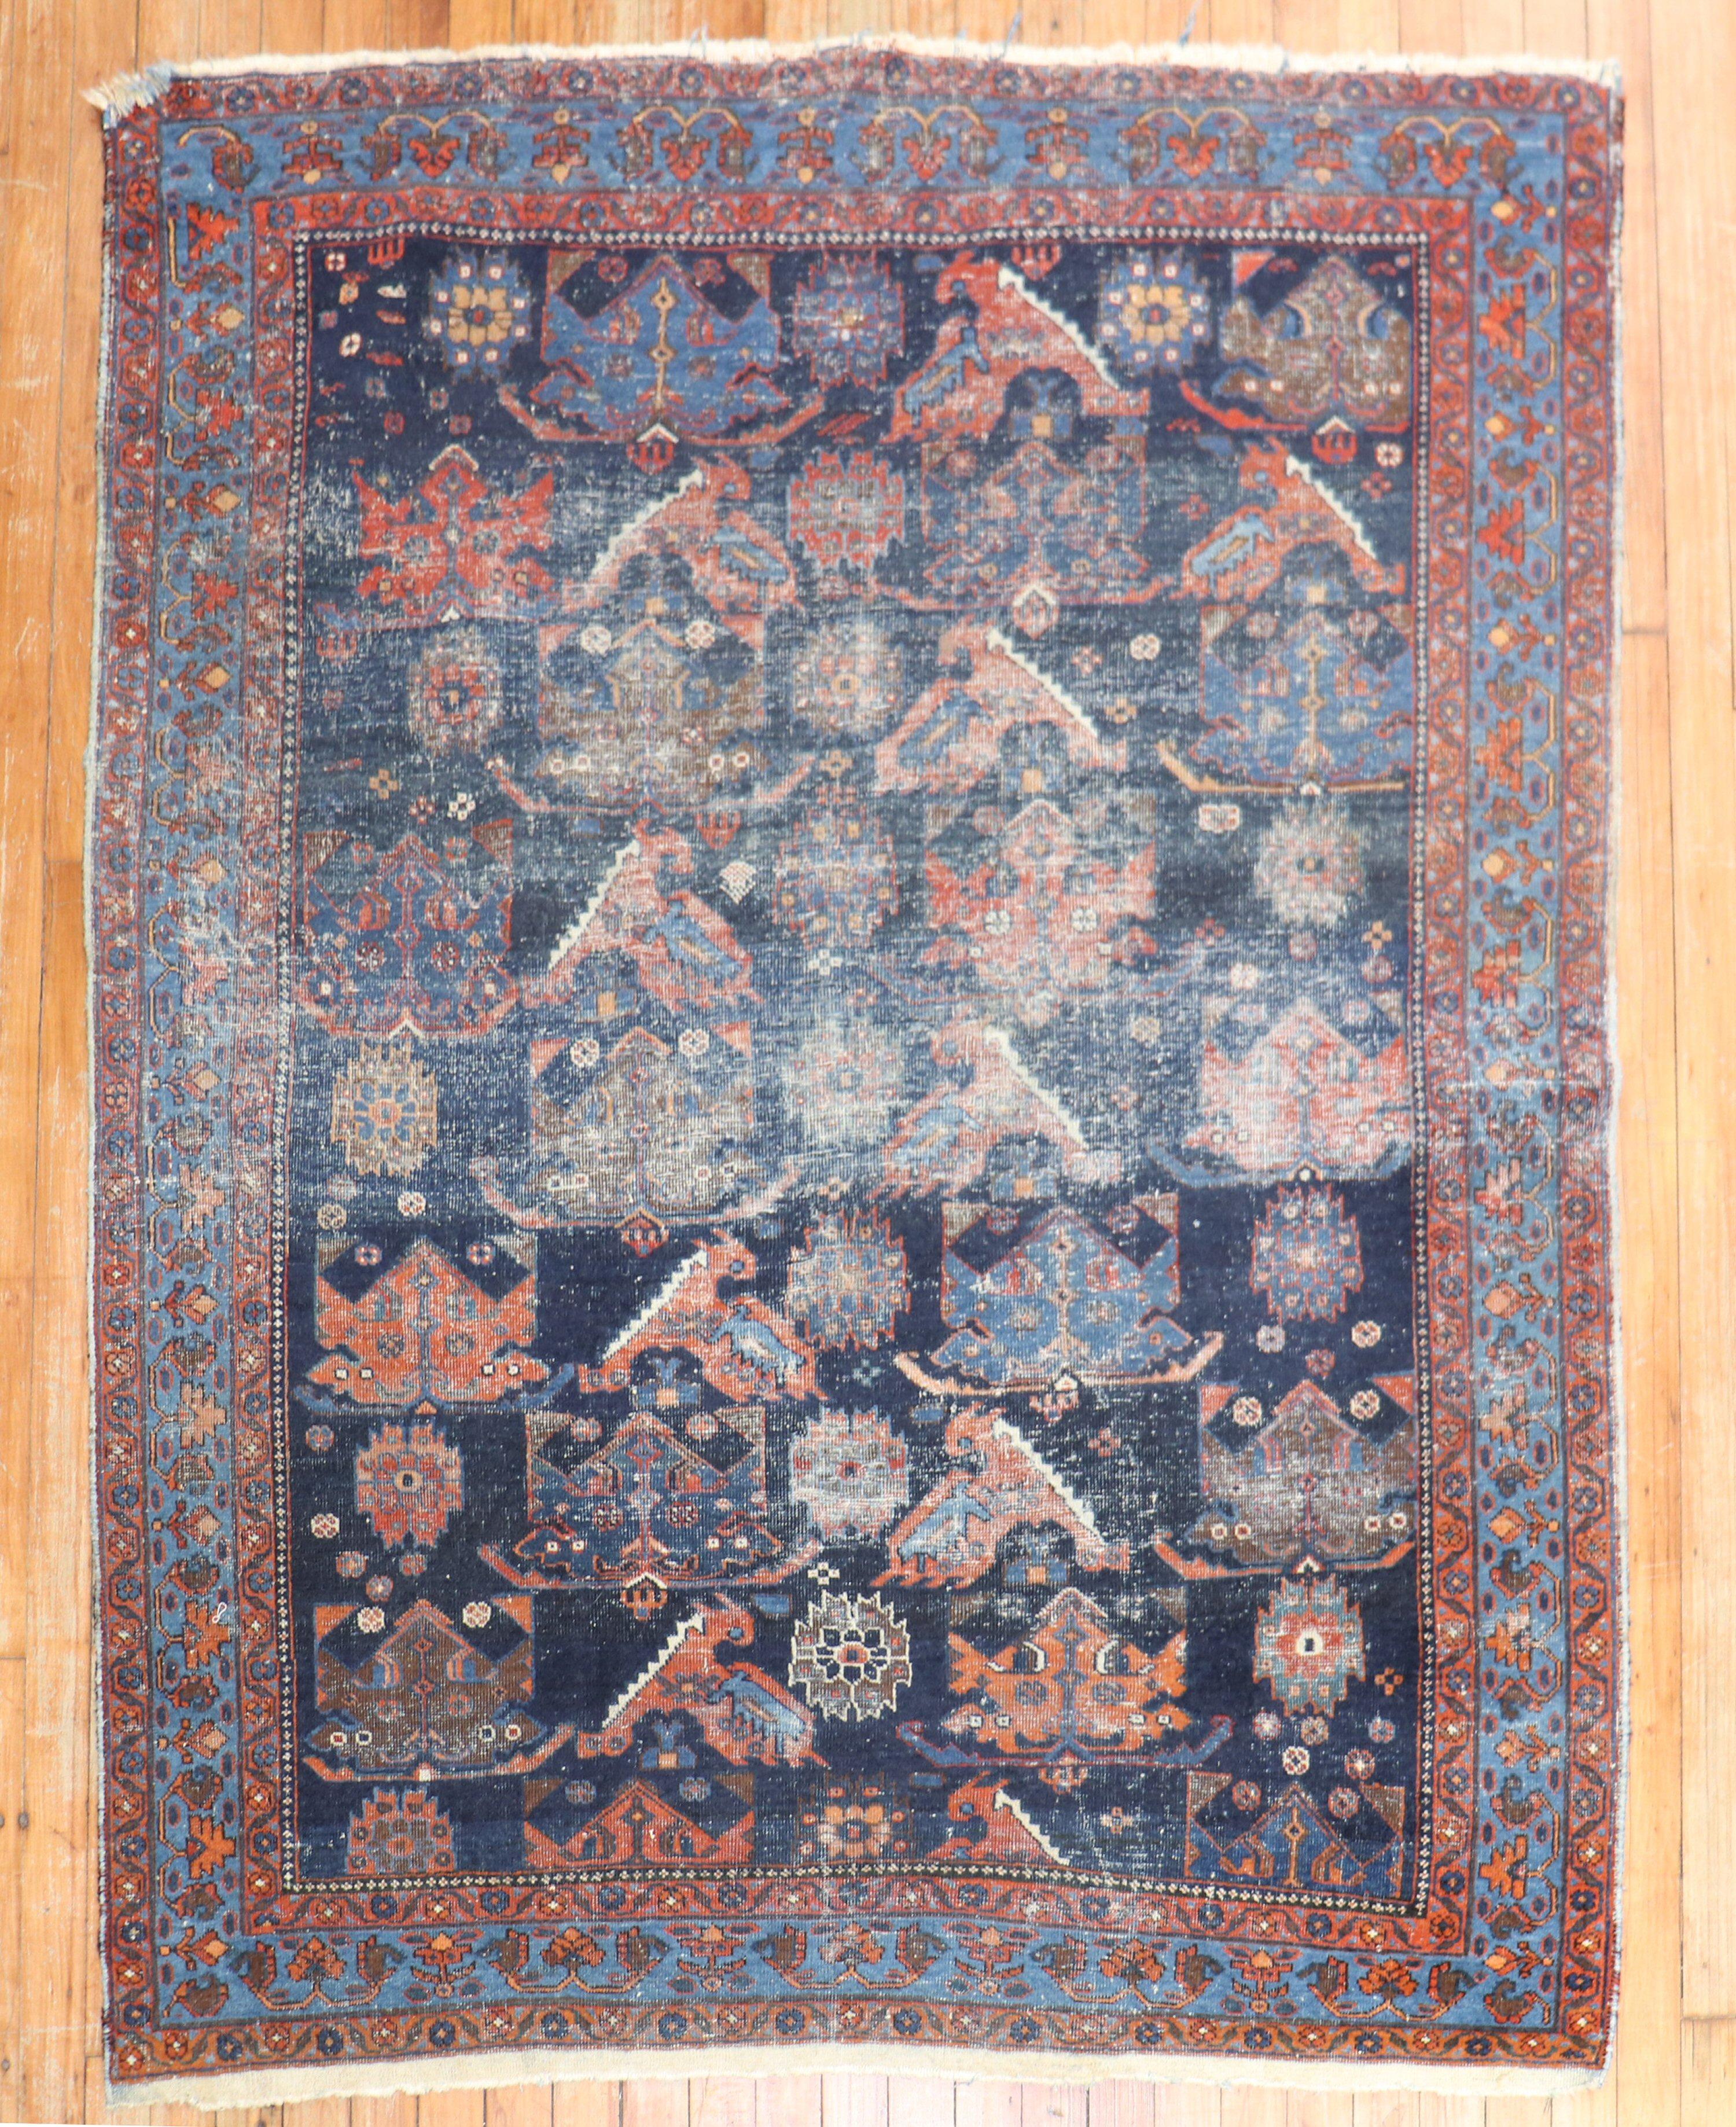 Tapis tribal carré persan usé du début du 20e siècle

Dimensions : 4'6'' x 5'7''.